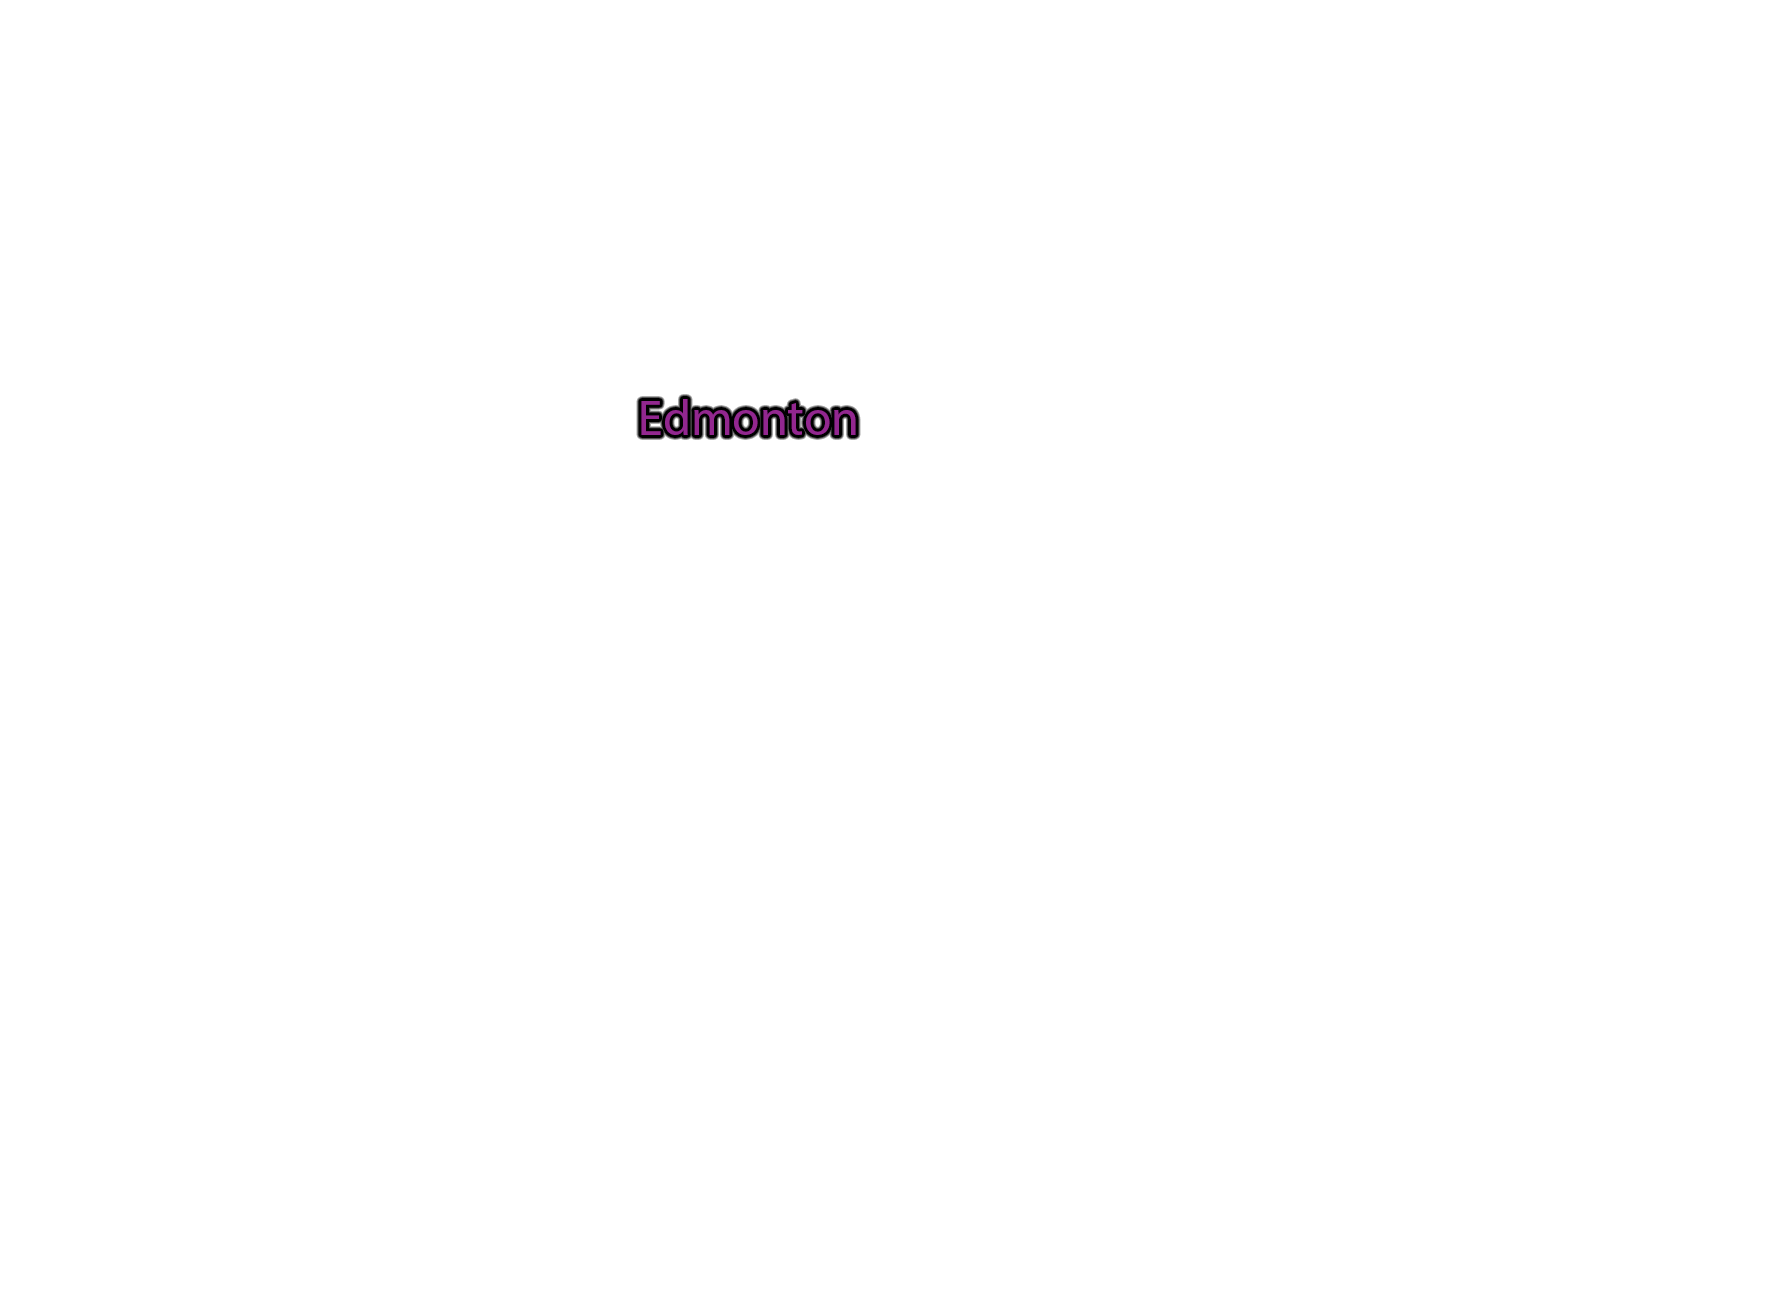 Edmonton label with glow